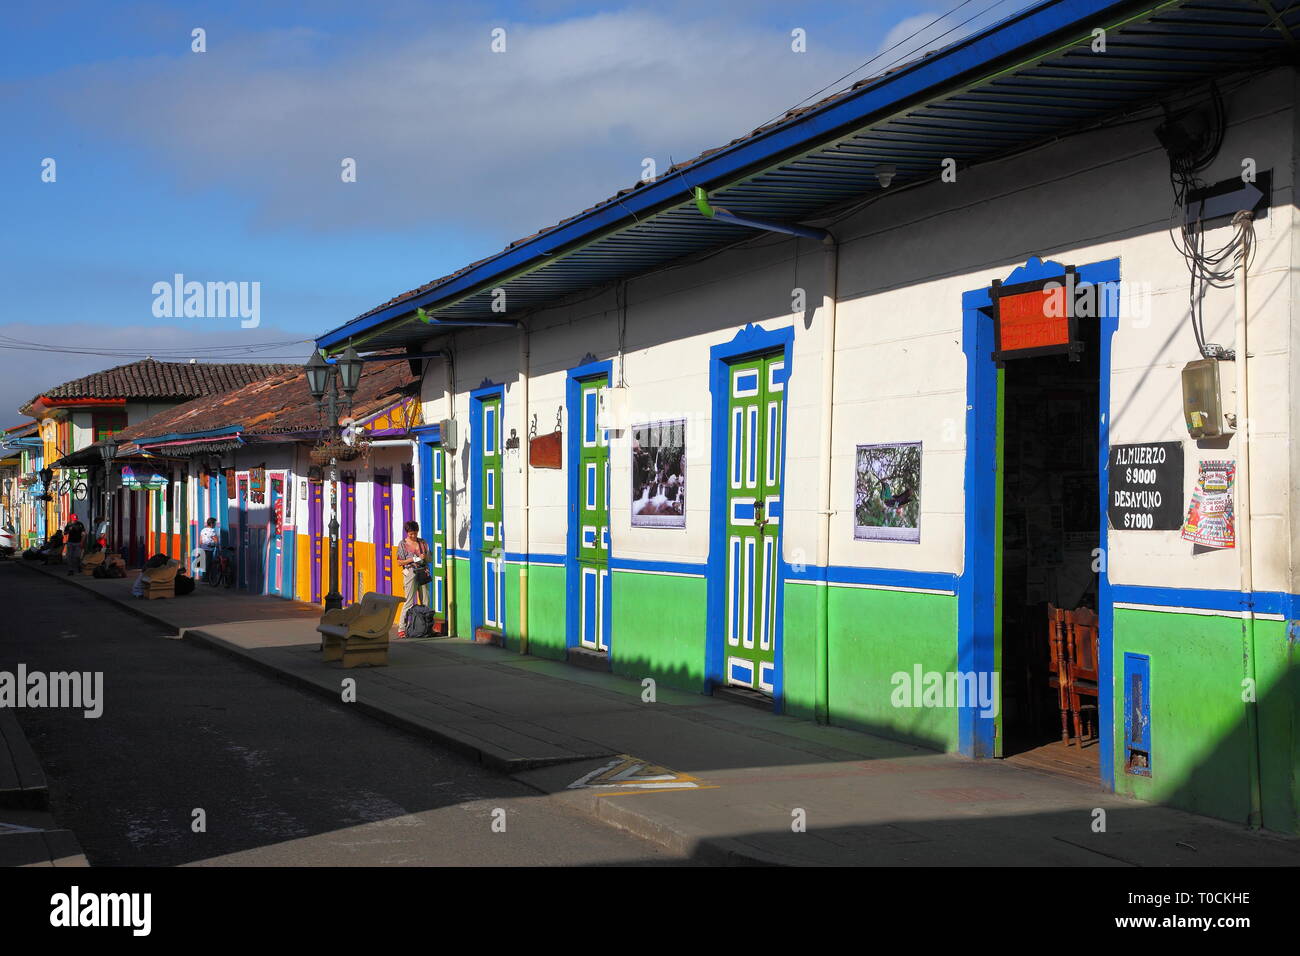 Peint de couleurs vives, magasins et restaurants dans la ville de Salento, dans le district Quindío de Colombie. Fondée en 1850, et construit en style Paisa. Banque D'Images